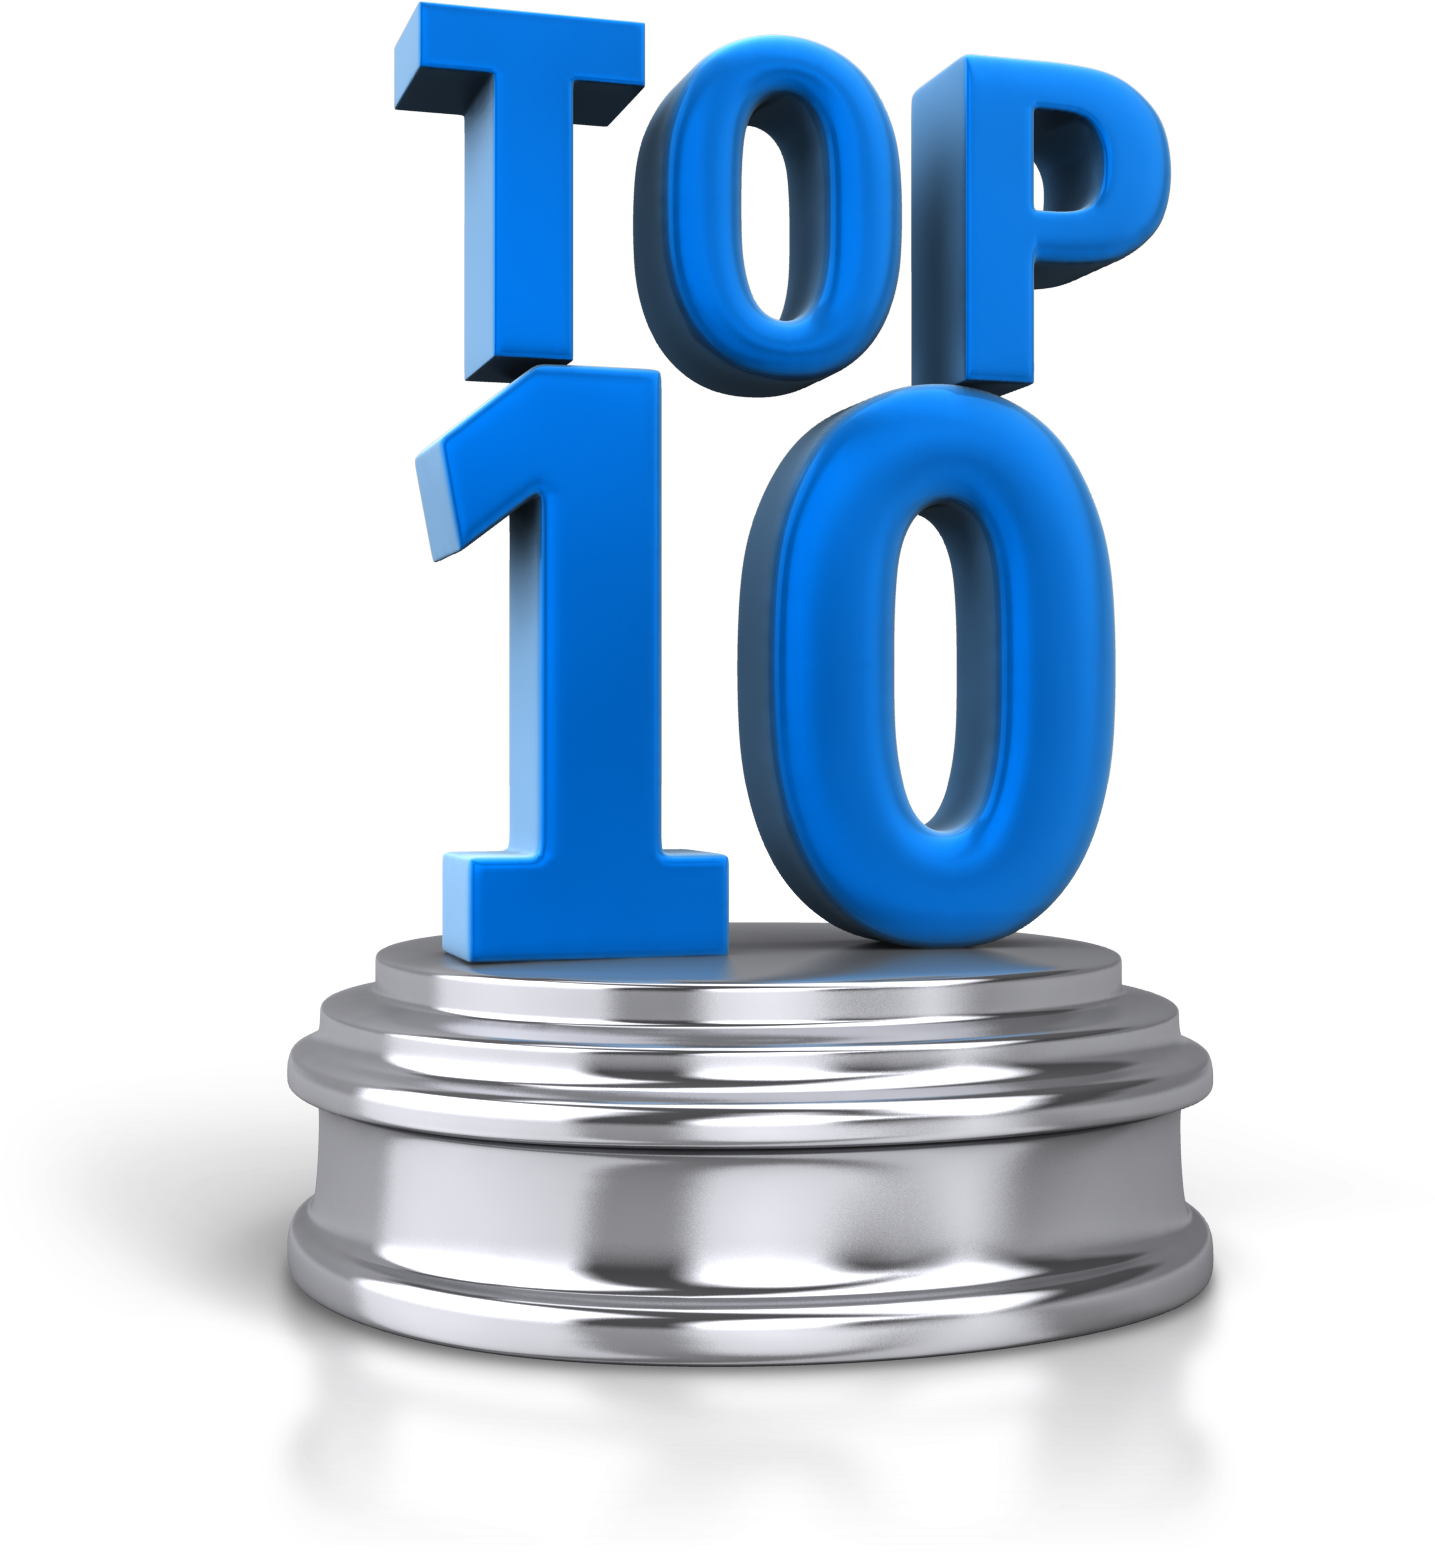 Top 10 Pedistal 1600 Clr - Top 10 Risks (1500x1600)